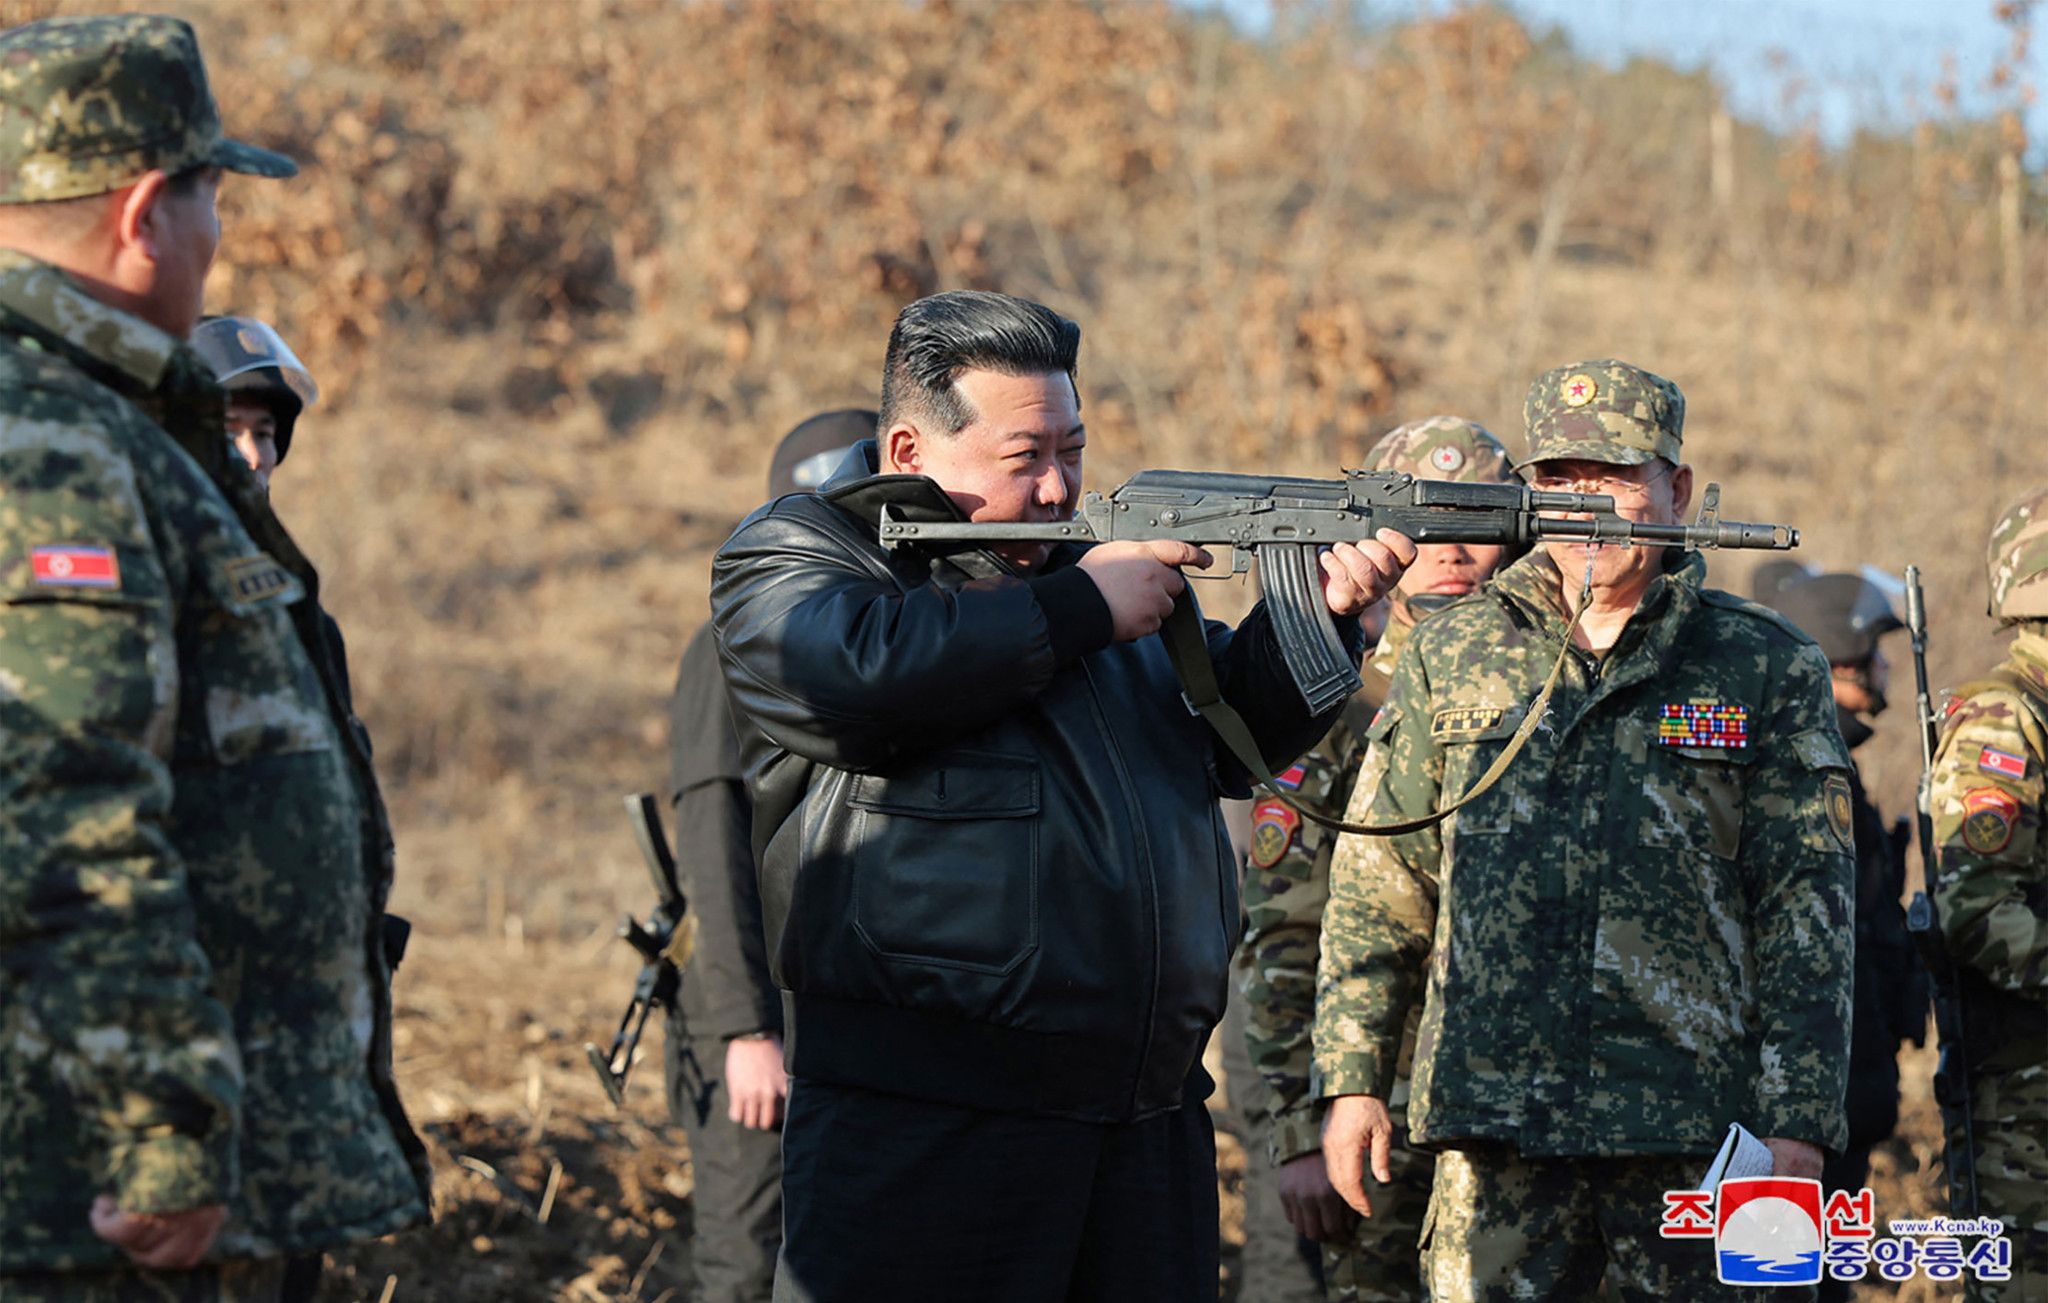 Kim brandit une arme lors de l'inspection d'une base d'entraînement